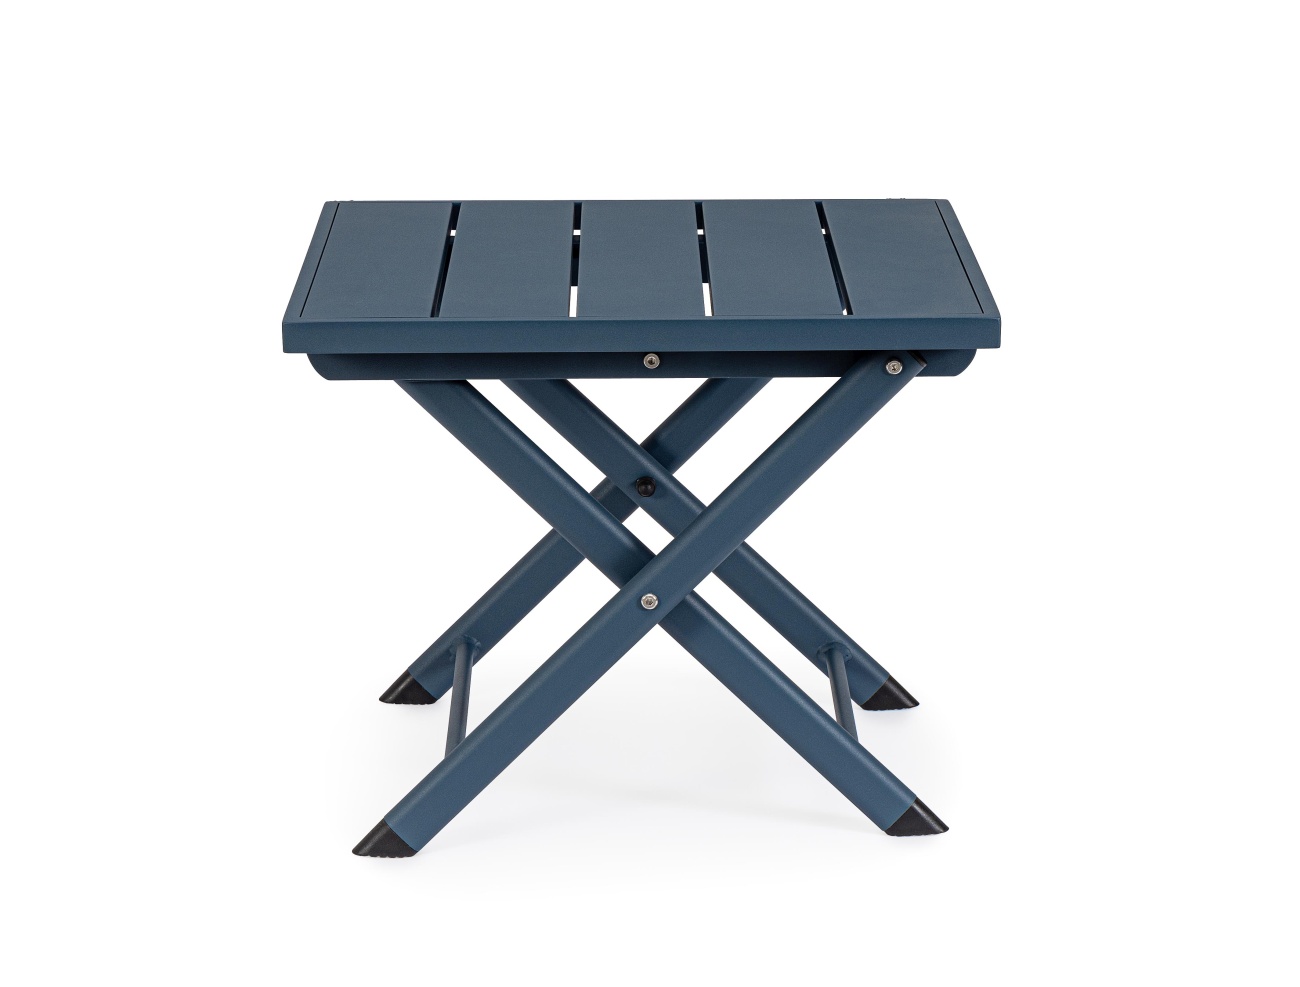 Der Gartenbeistelltisch Taylor überzeugt mit seinem modernen Design. Gefertigt wurde er aus Aluminium, welches einen blauen Farbton besitzt. Das Gestell ist auch aus Aluminium. Der Tisch besitzt eine Größe von 44x43 cm. Der Tisch ist klappbar.